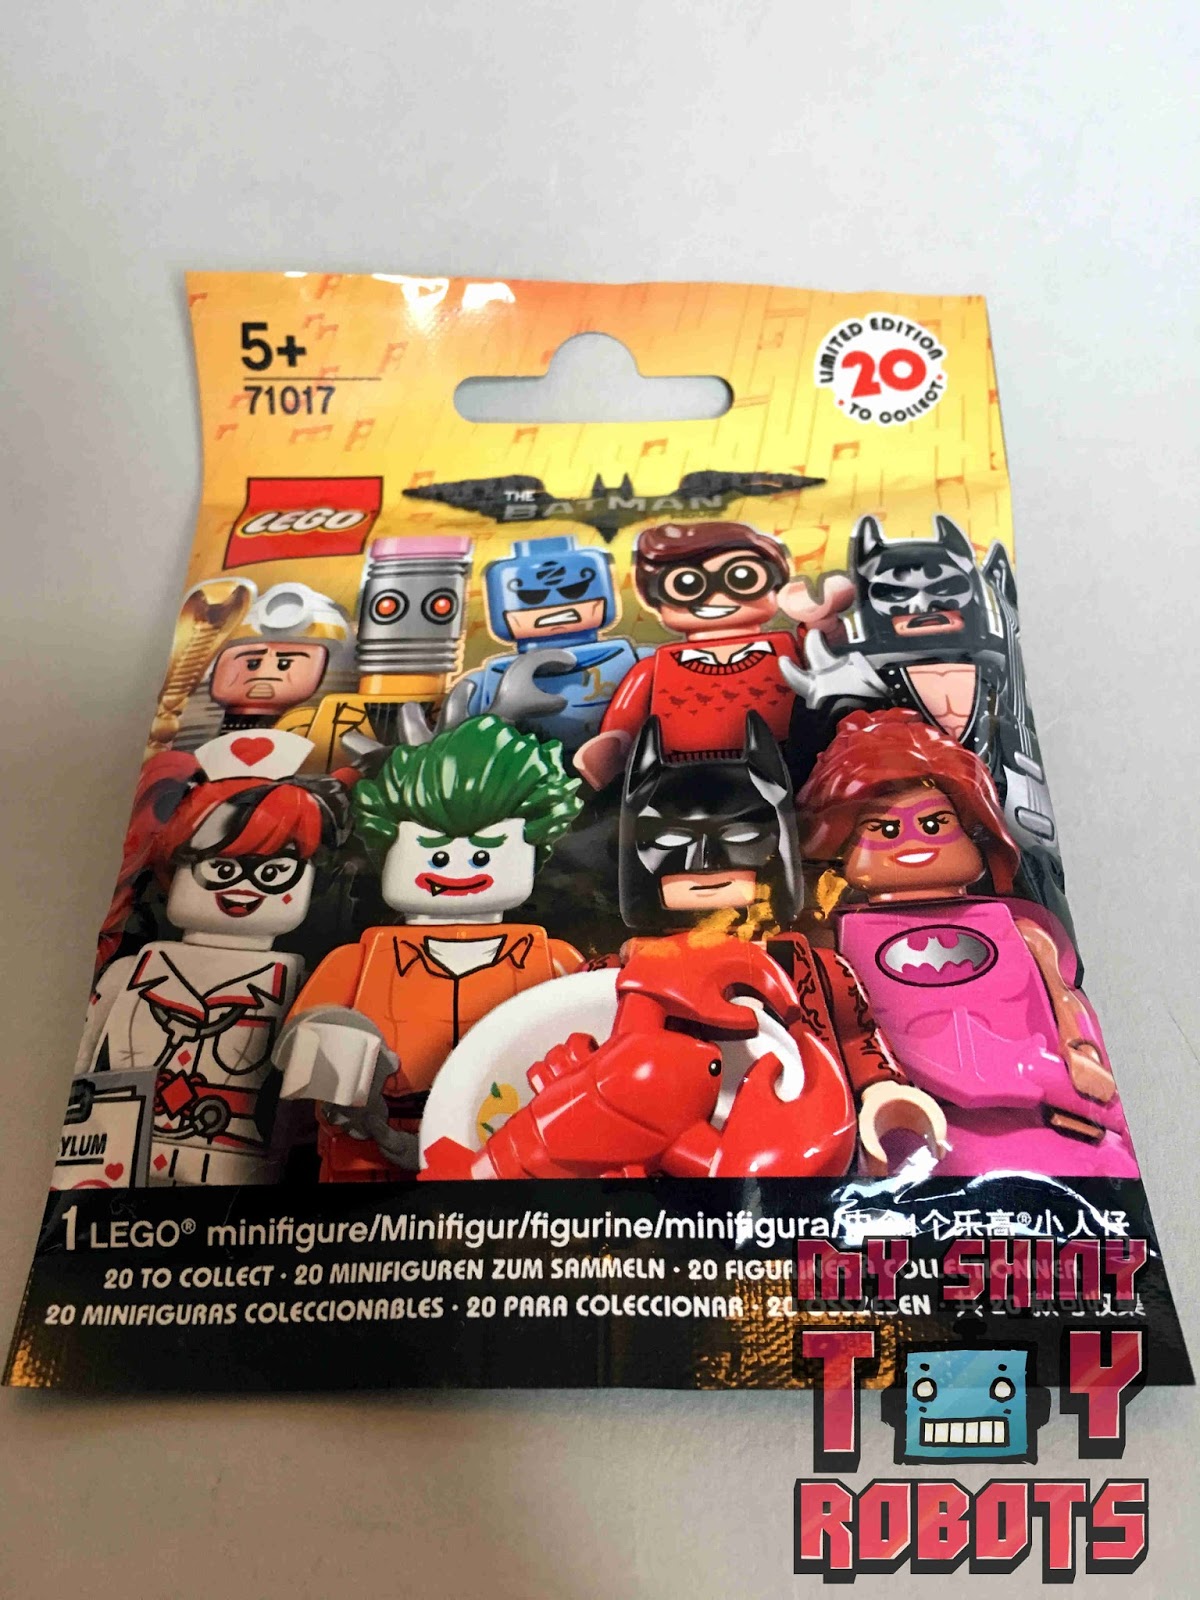 The LEGO Batman Movie Series 1: Fairy Batman